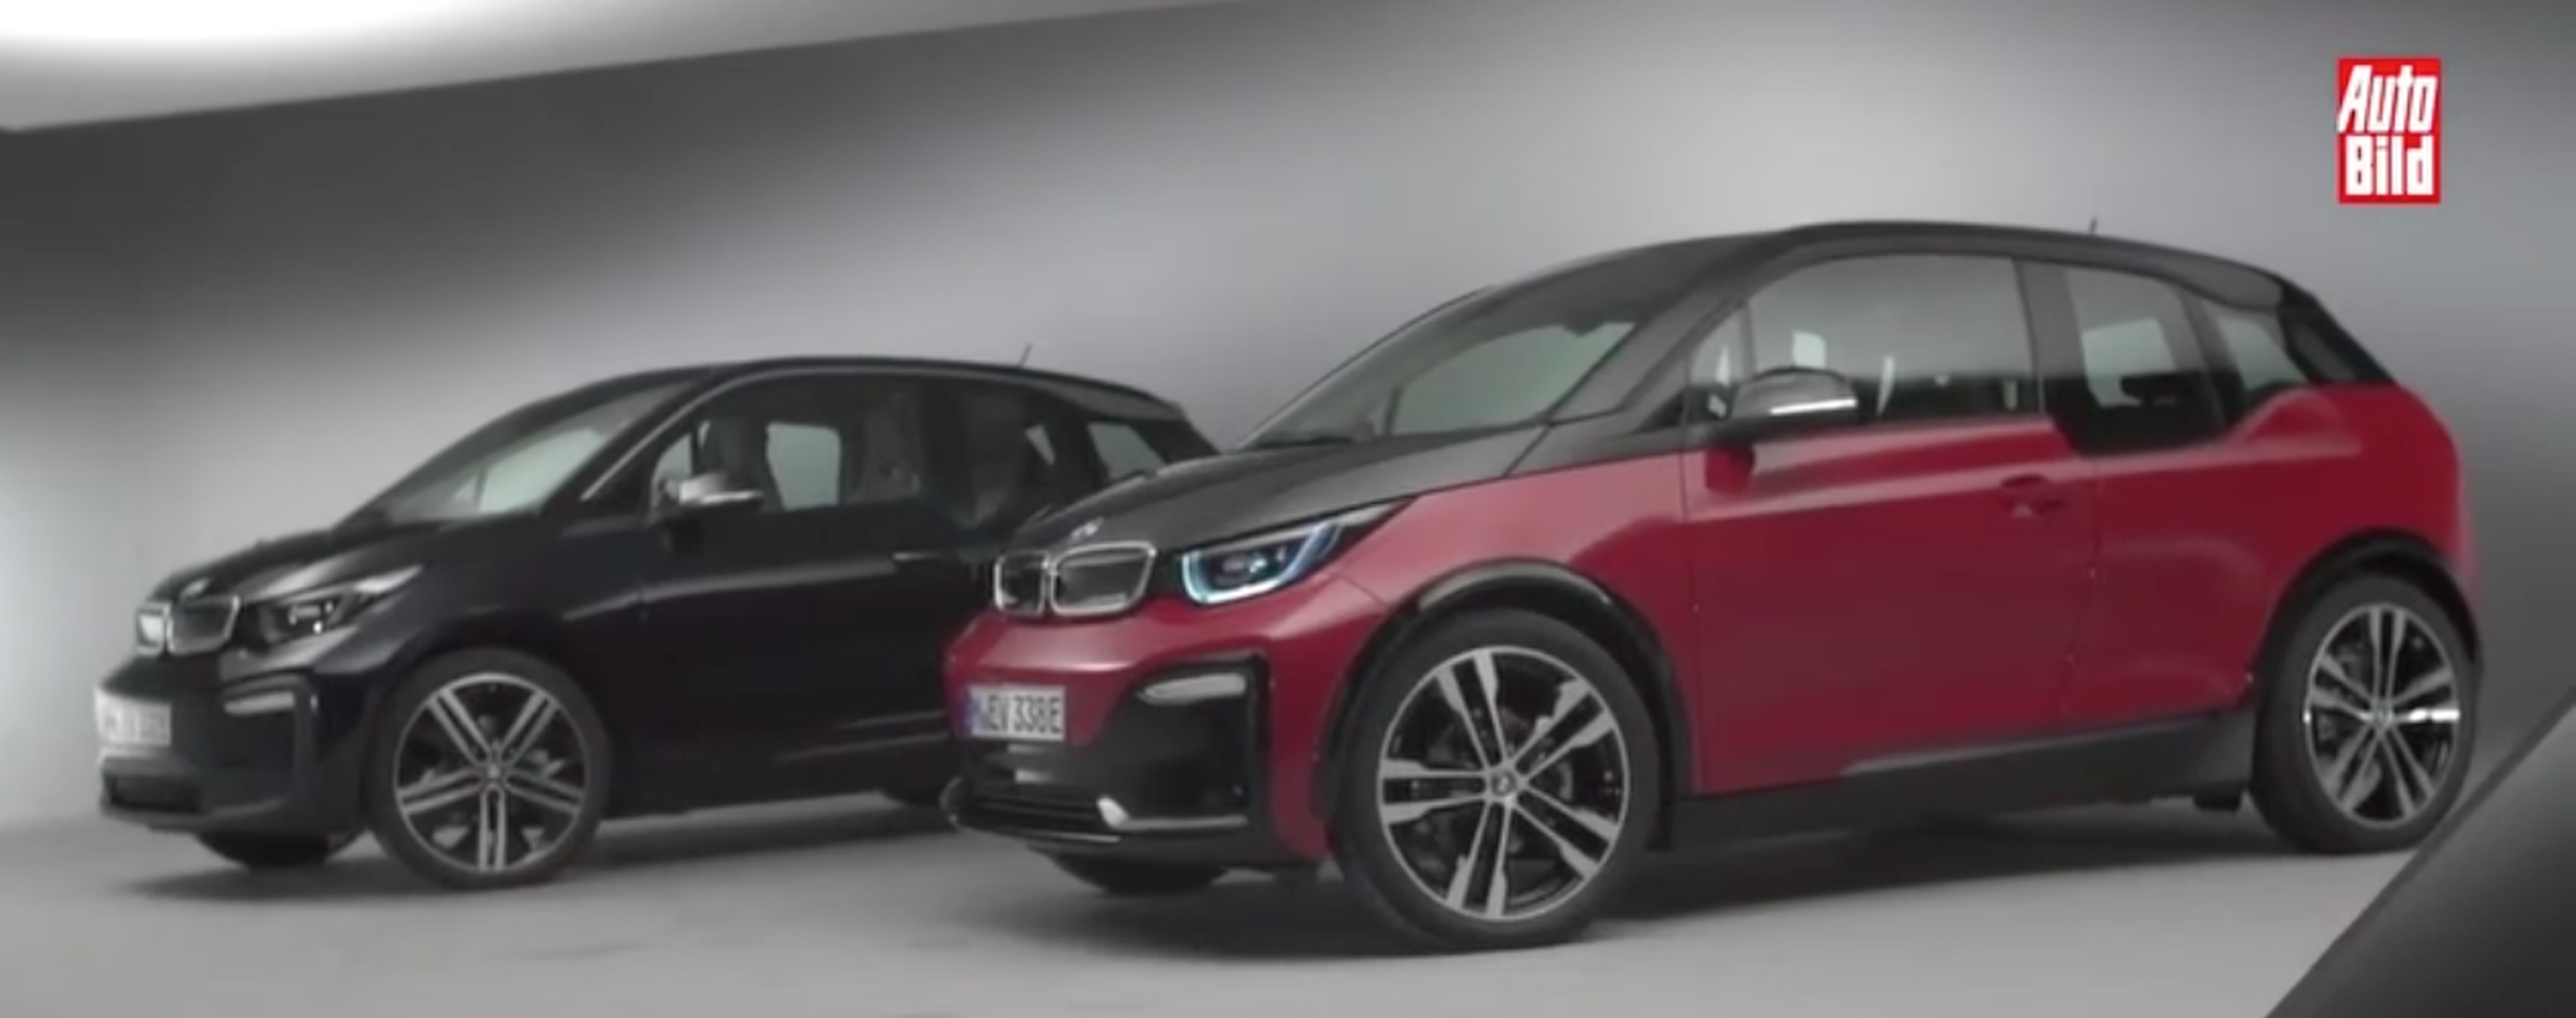 VÍDEO: BMW i3 2017, mira en que consiste su 'facelift'